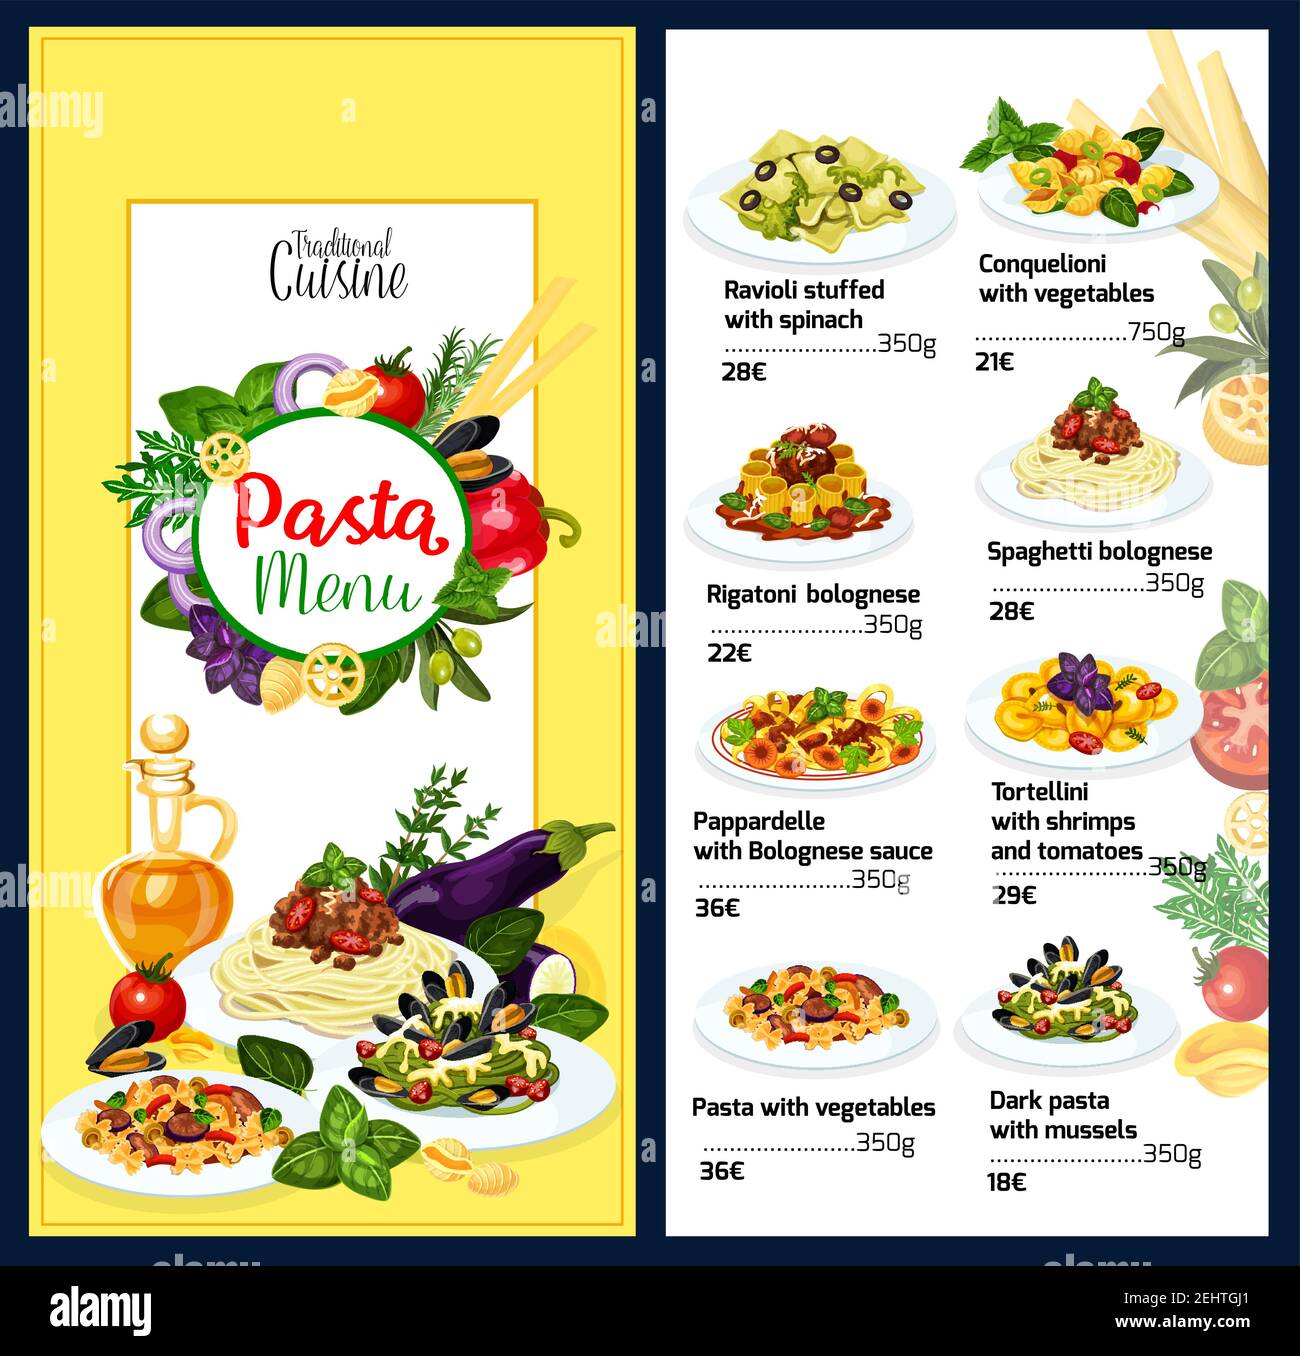 Pasta-Menü Vorlage der italienischen Küche. Ravioli gefüllt mit Spinat und conquelioni mit Gemüse, Rigatoni oder Spaghetti Bolognese. Pappardelle wit Stock Vektor